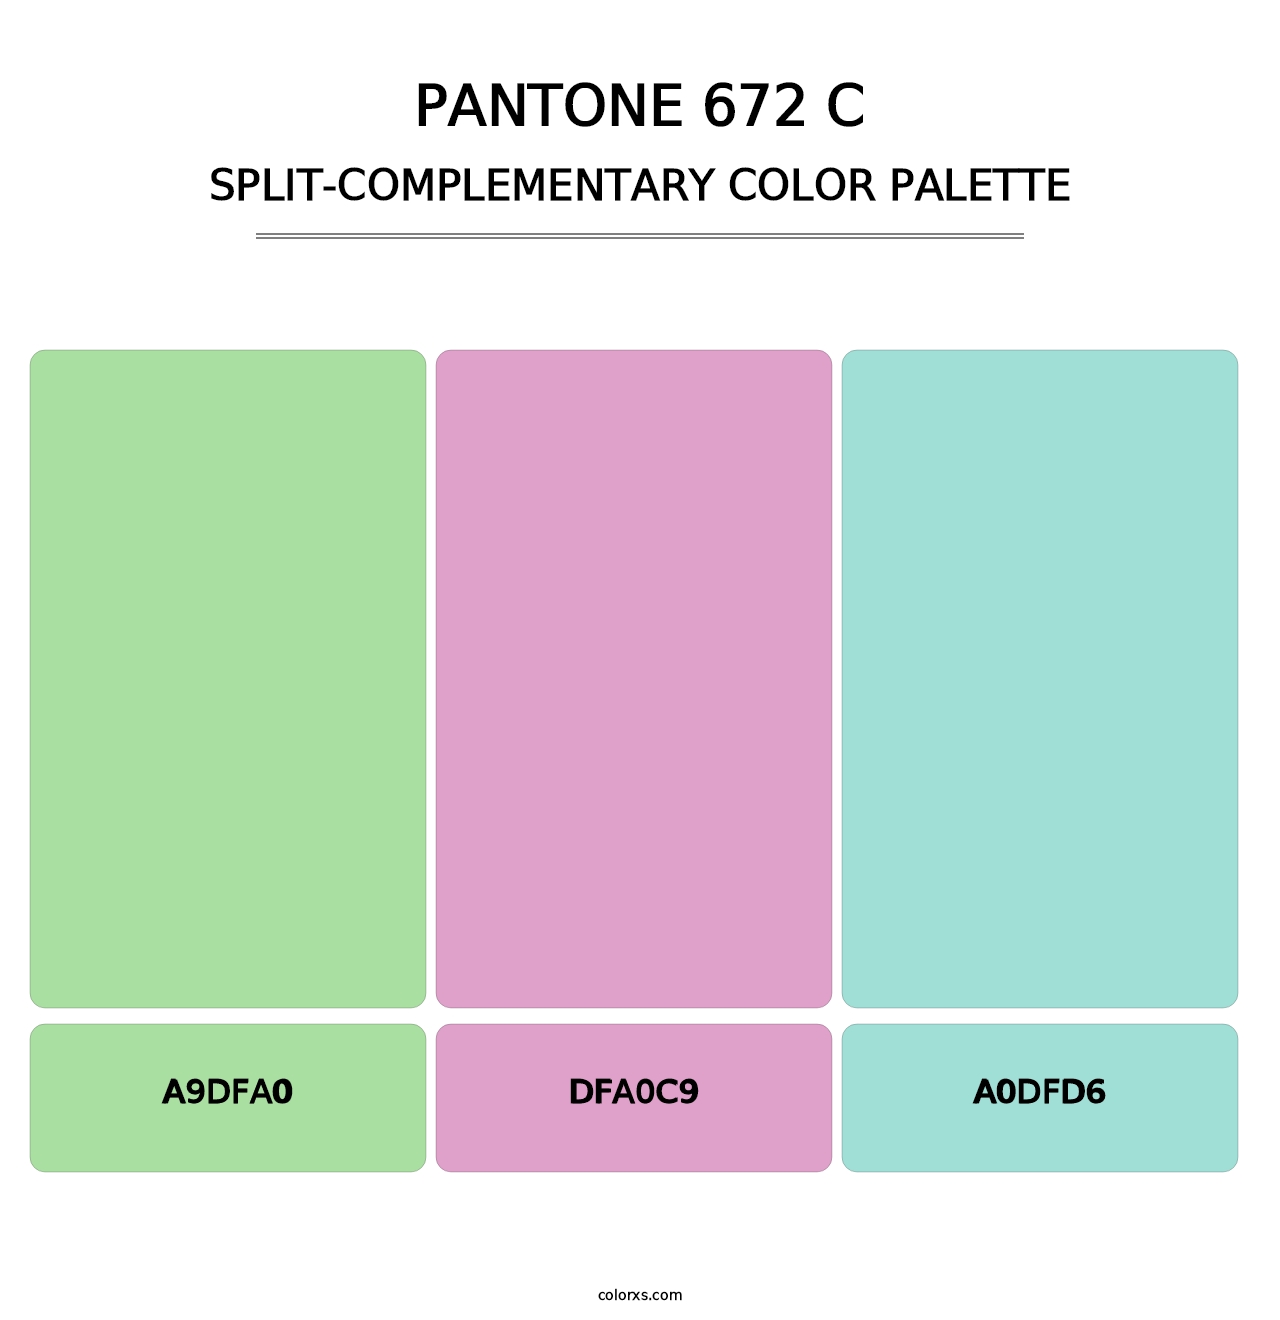 PANTONE 672 C - Split-Complementary Color Palette